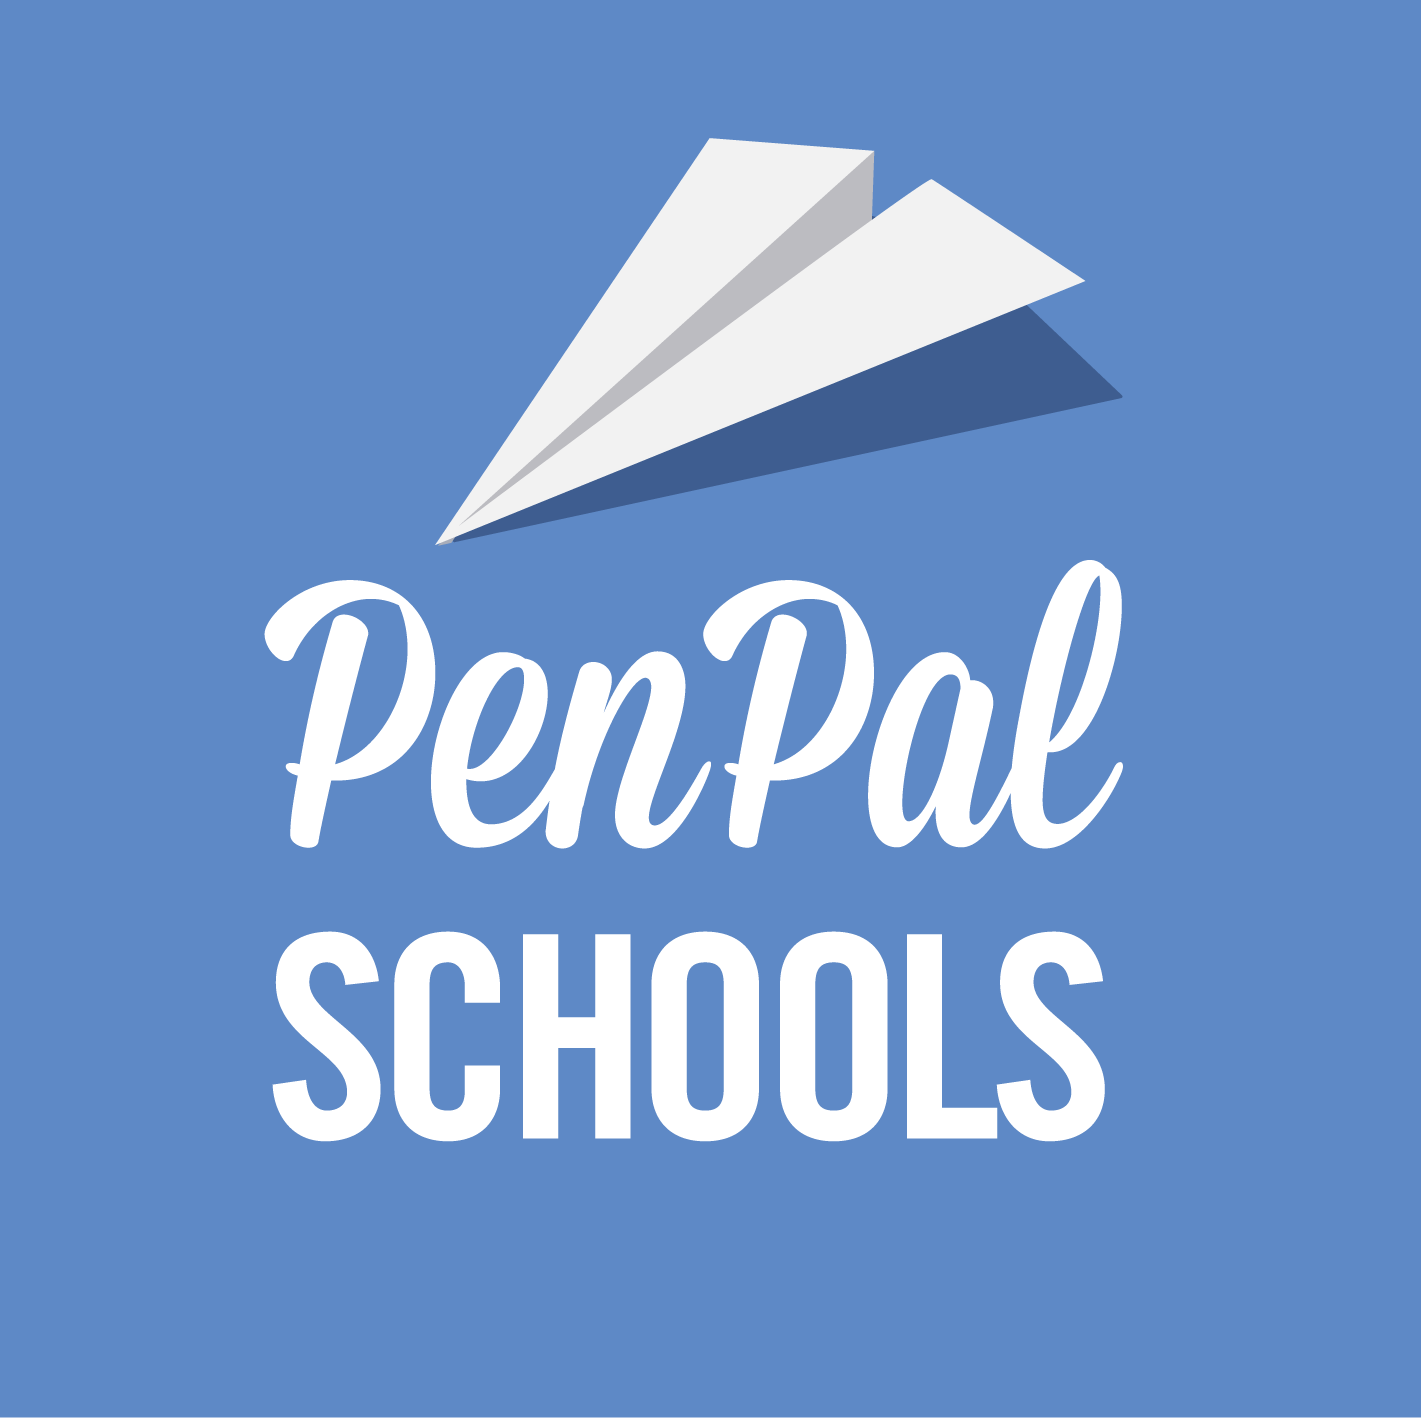 Elementary School Pen Pal Programs For Children